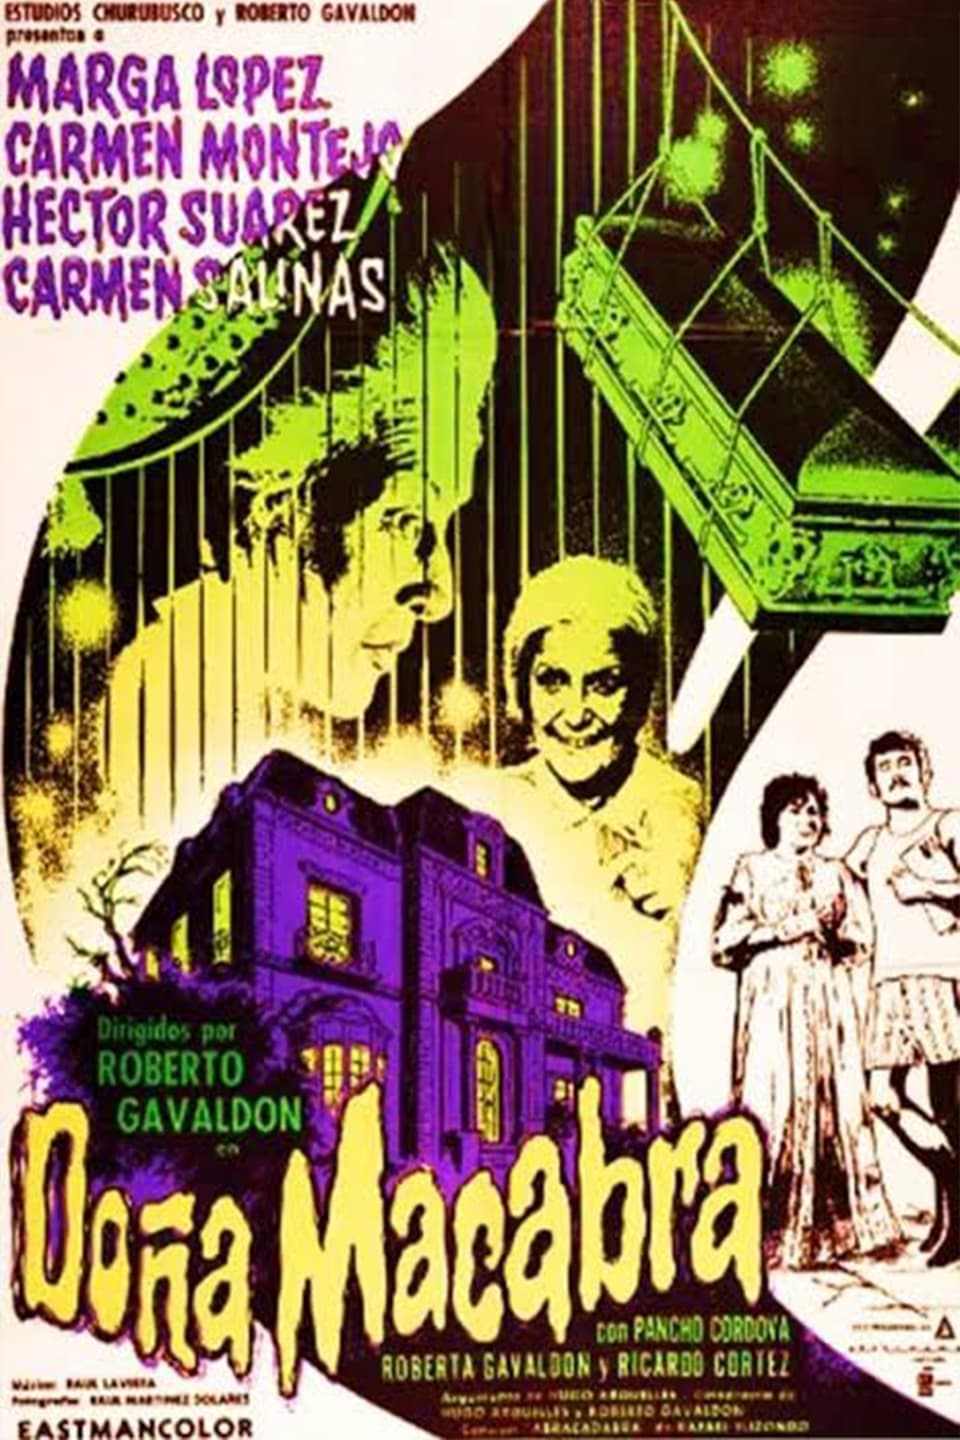 Doña Macabra (1972)